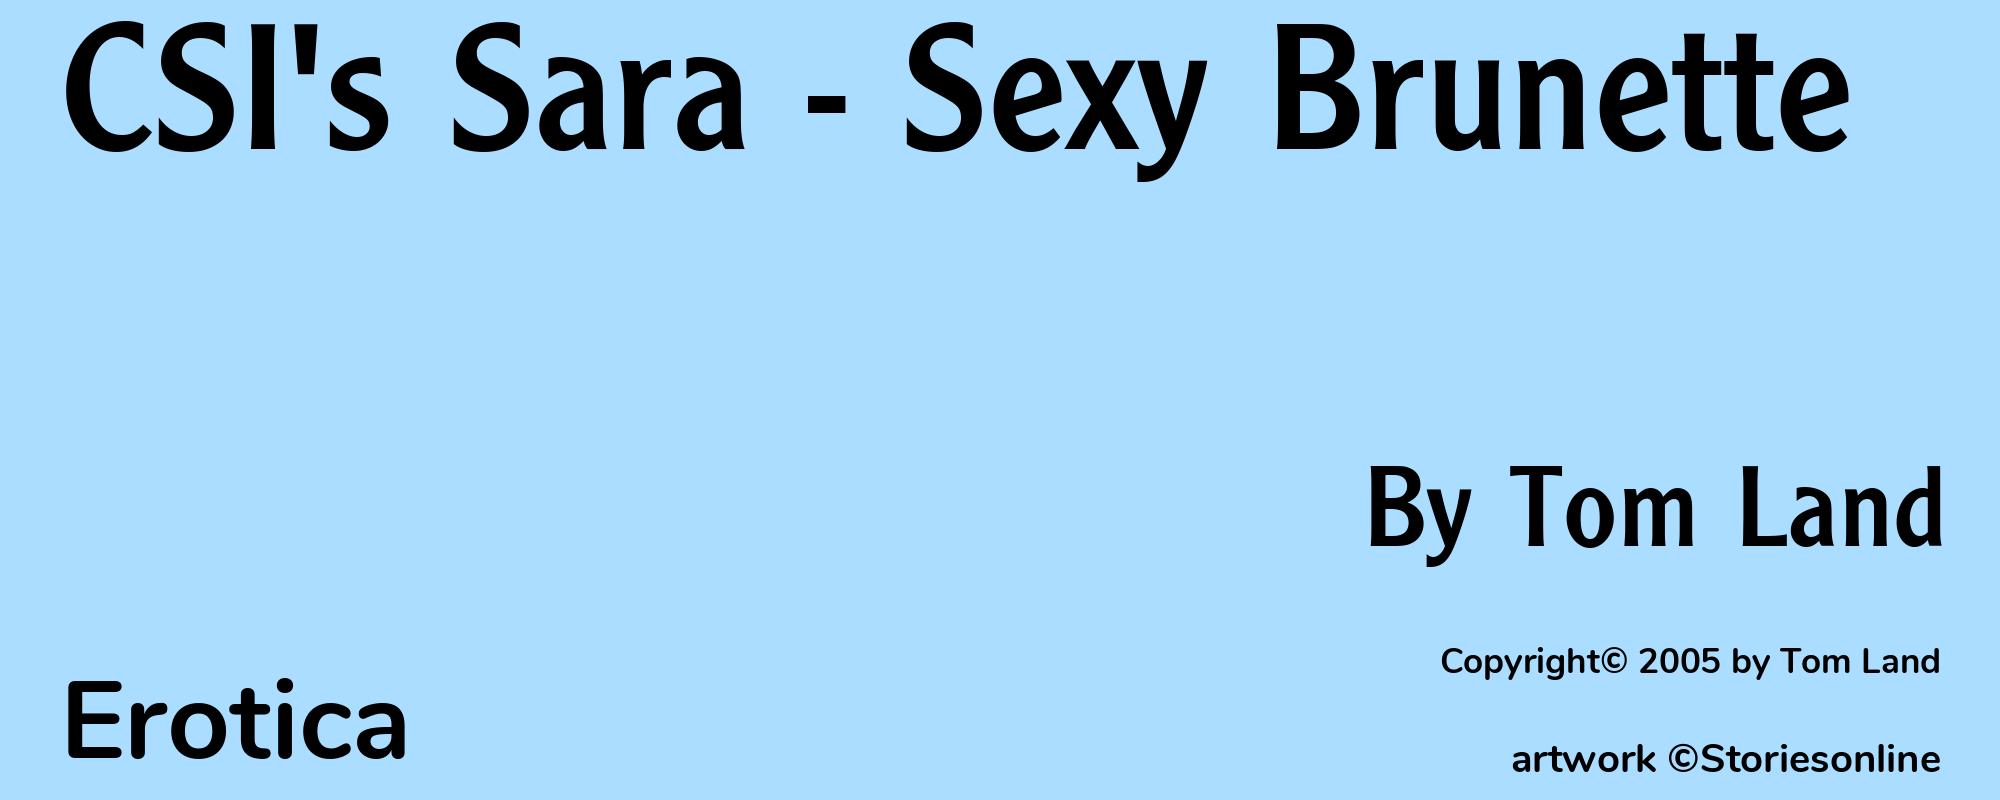 CSI's Sara - Sexy Brunette - Cover